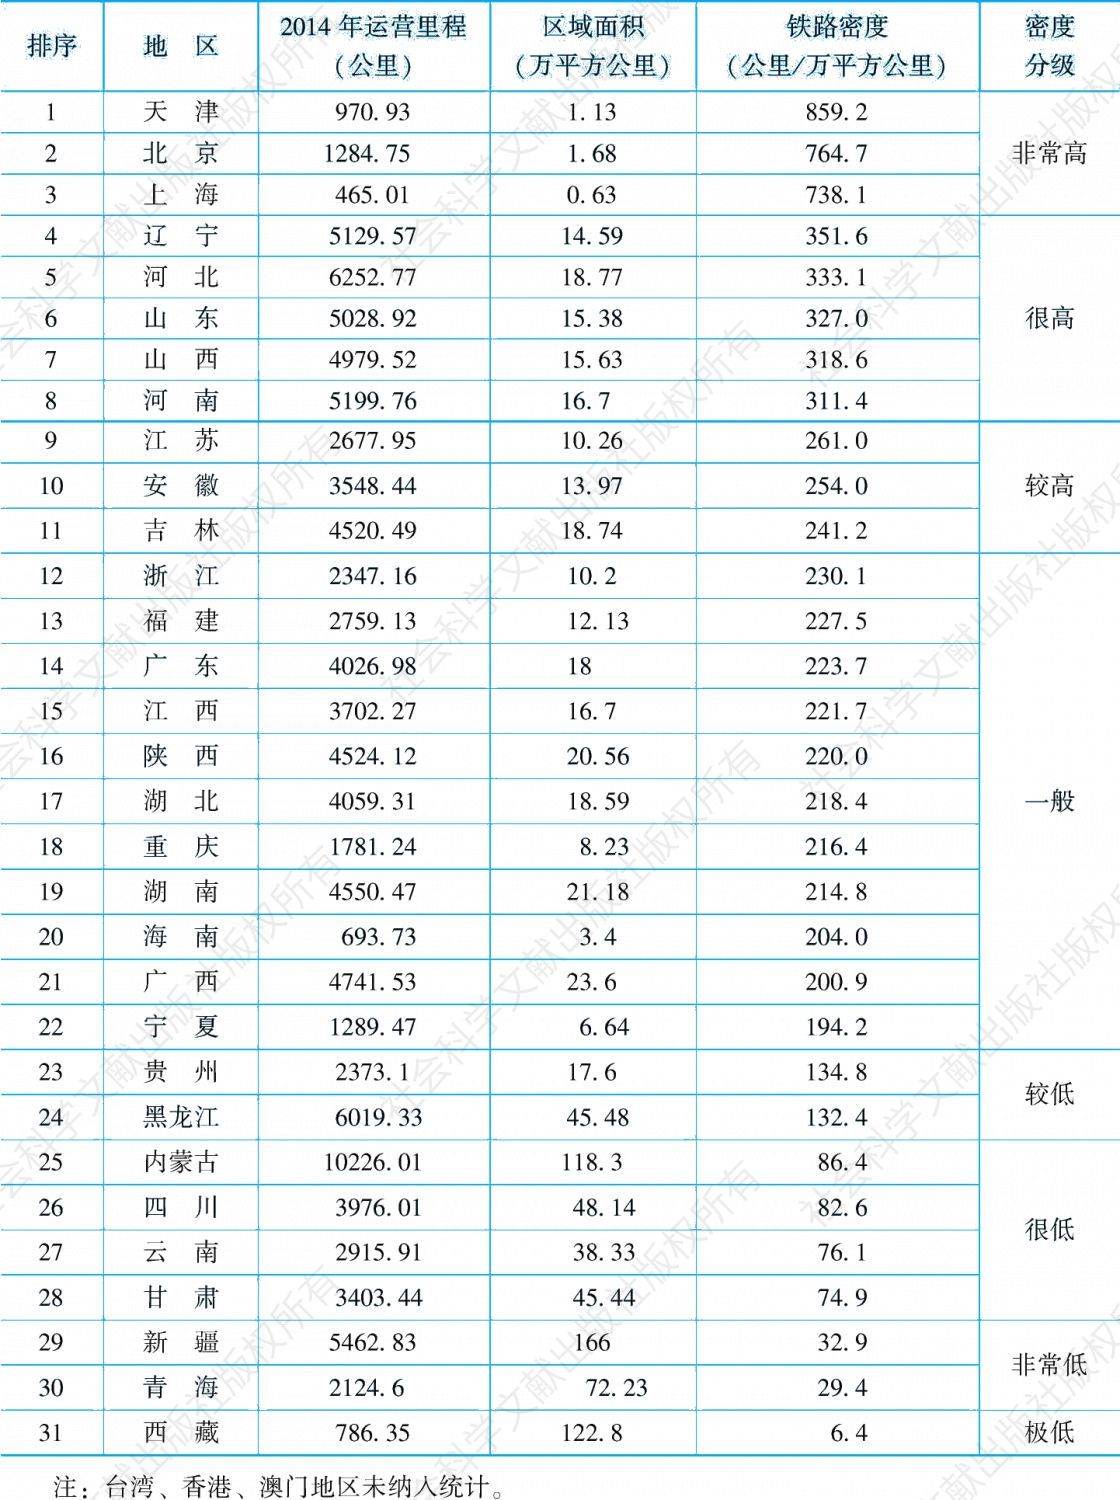 表3-1 中国各省域铁路密度（按面积计算）